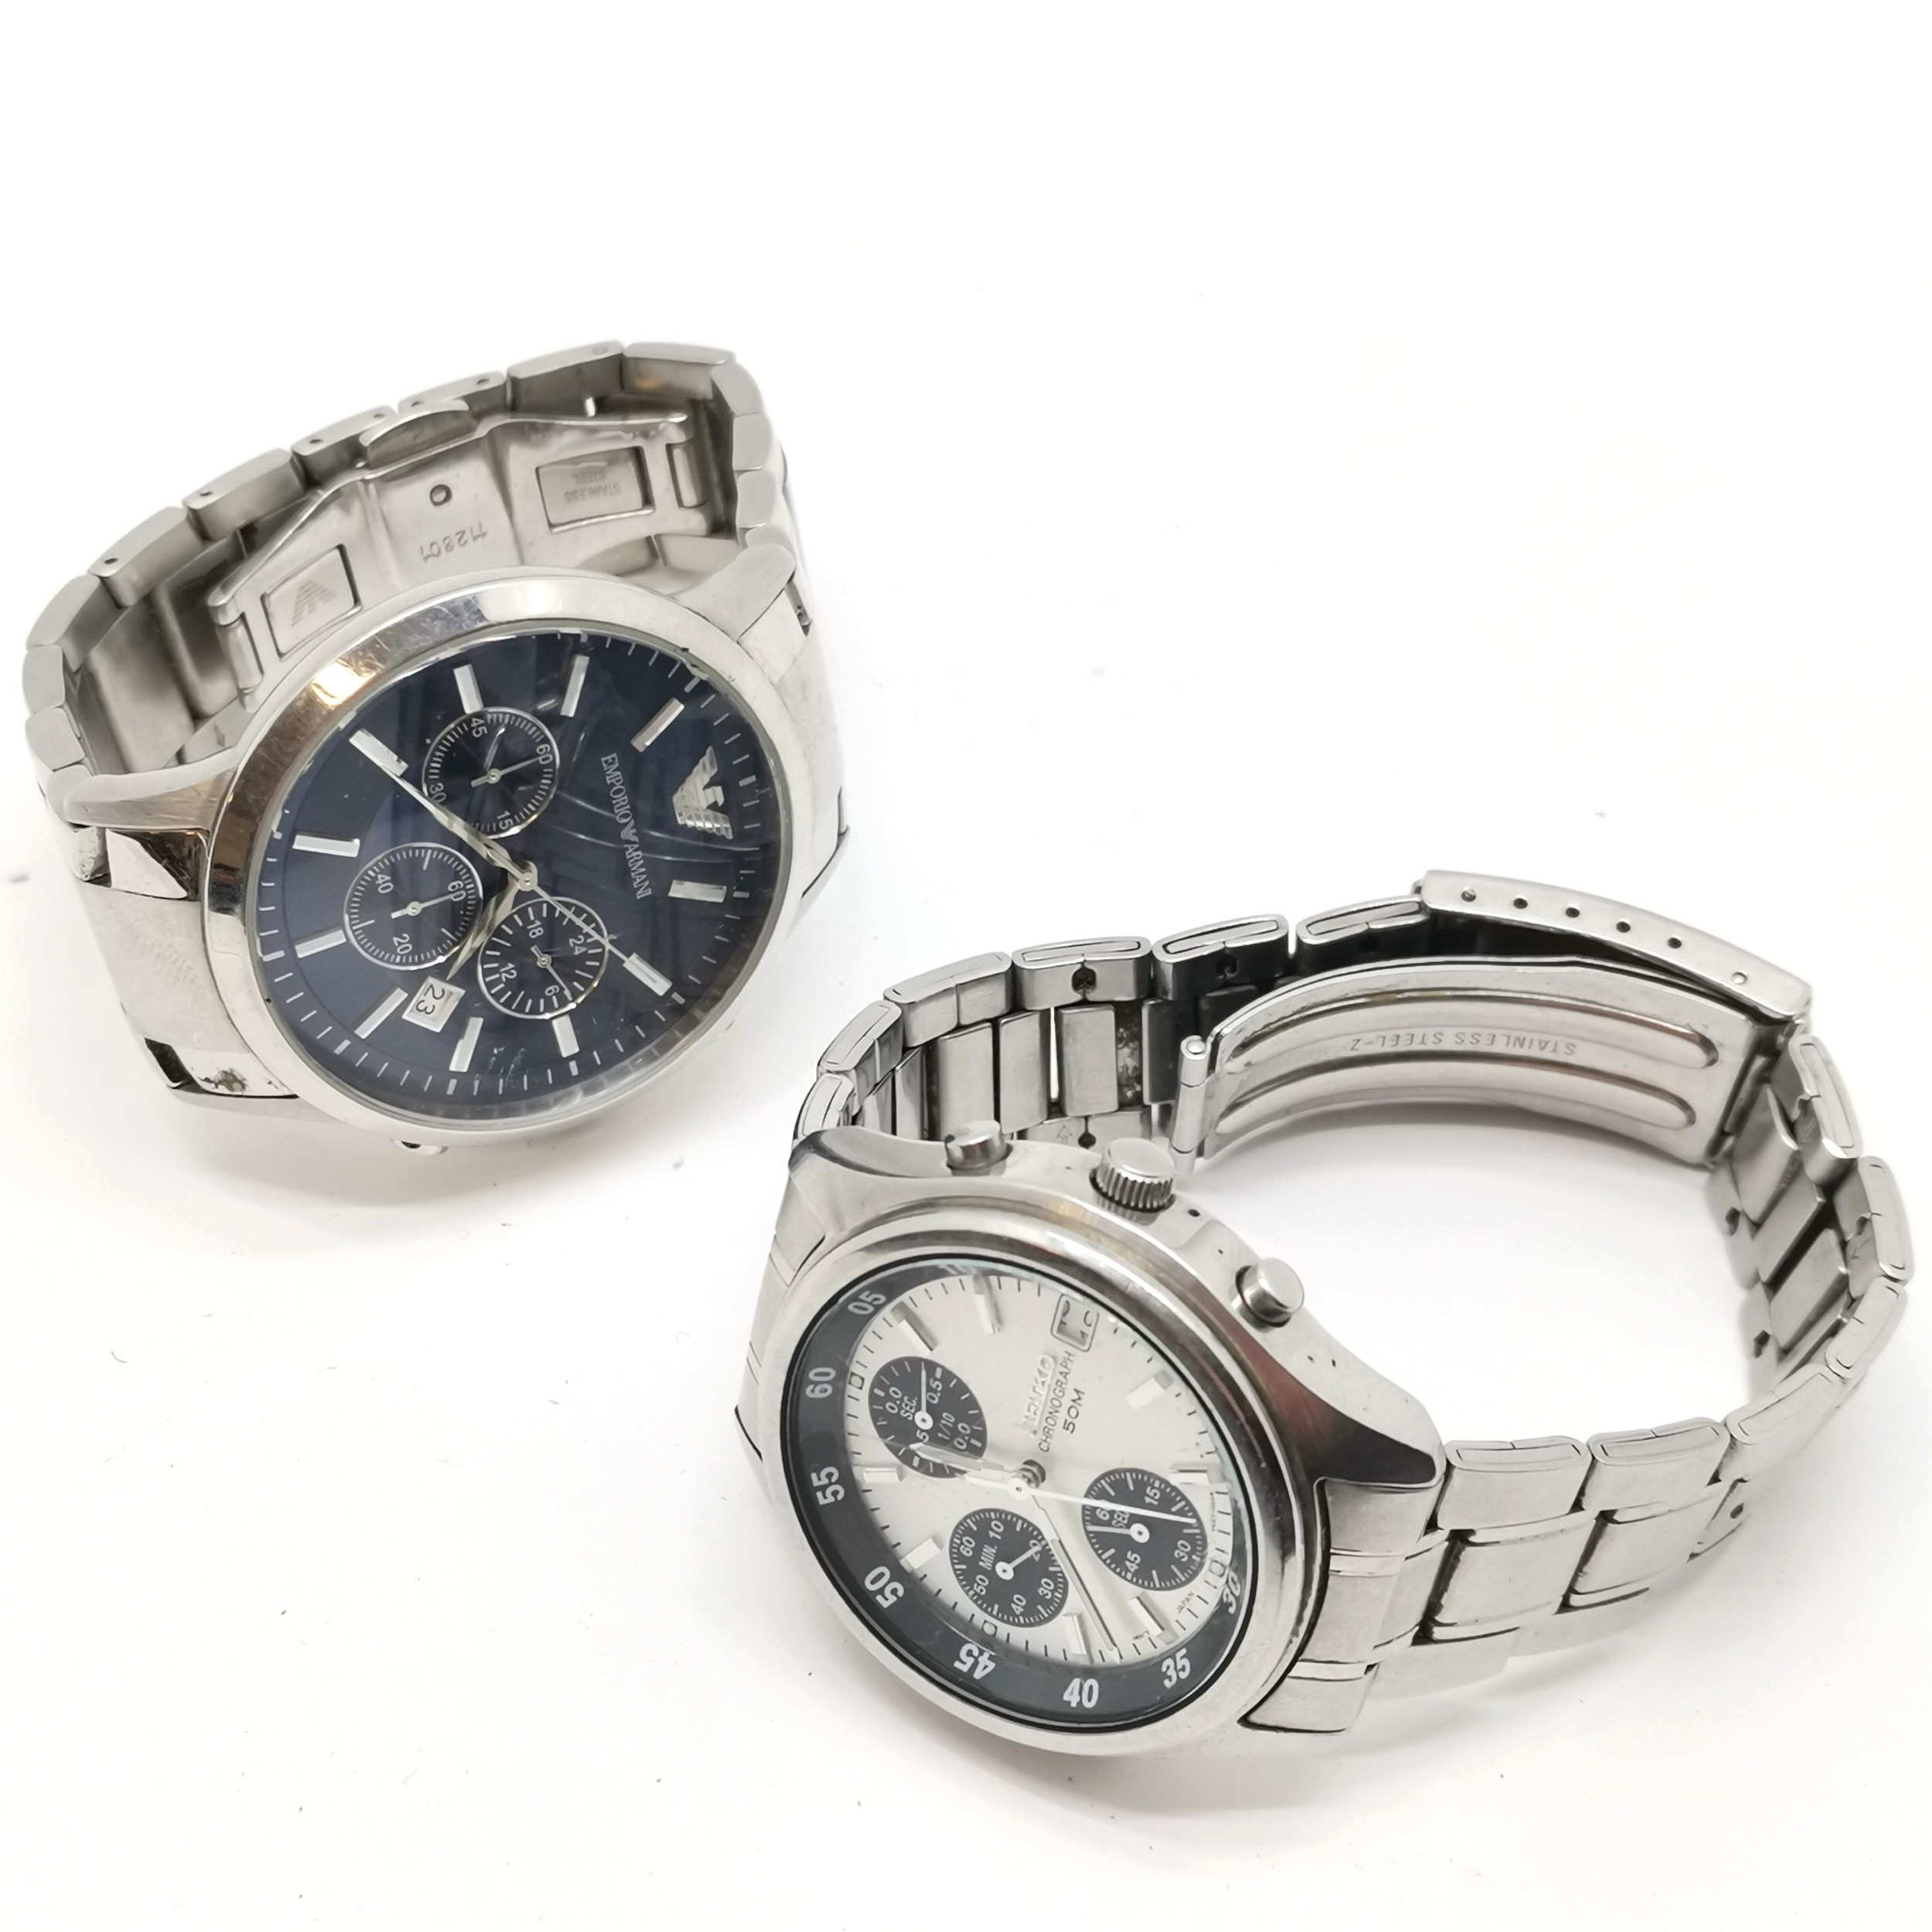 Seiko chronograph 50mm quartz wristwatch t/w Emporio Armani fashion quartz watch in stainless - Image 2 of 3